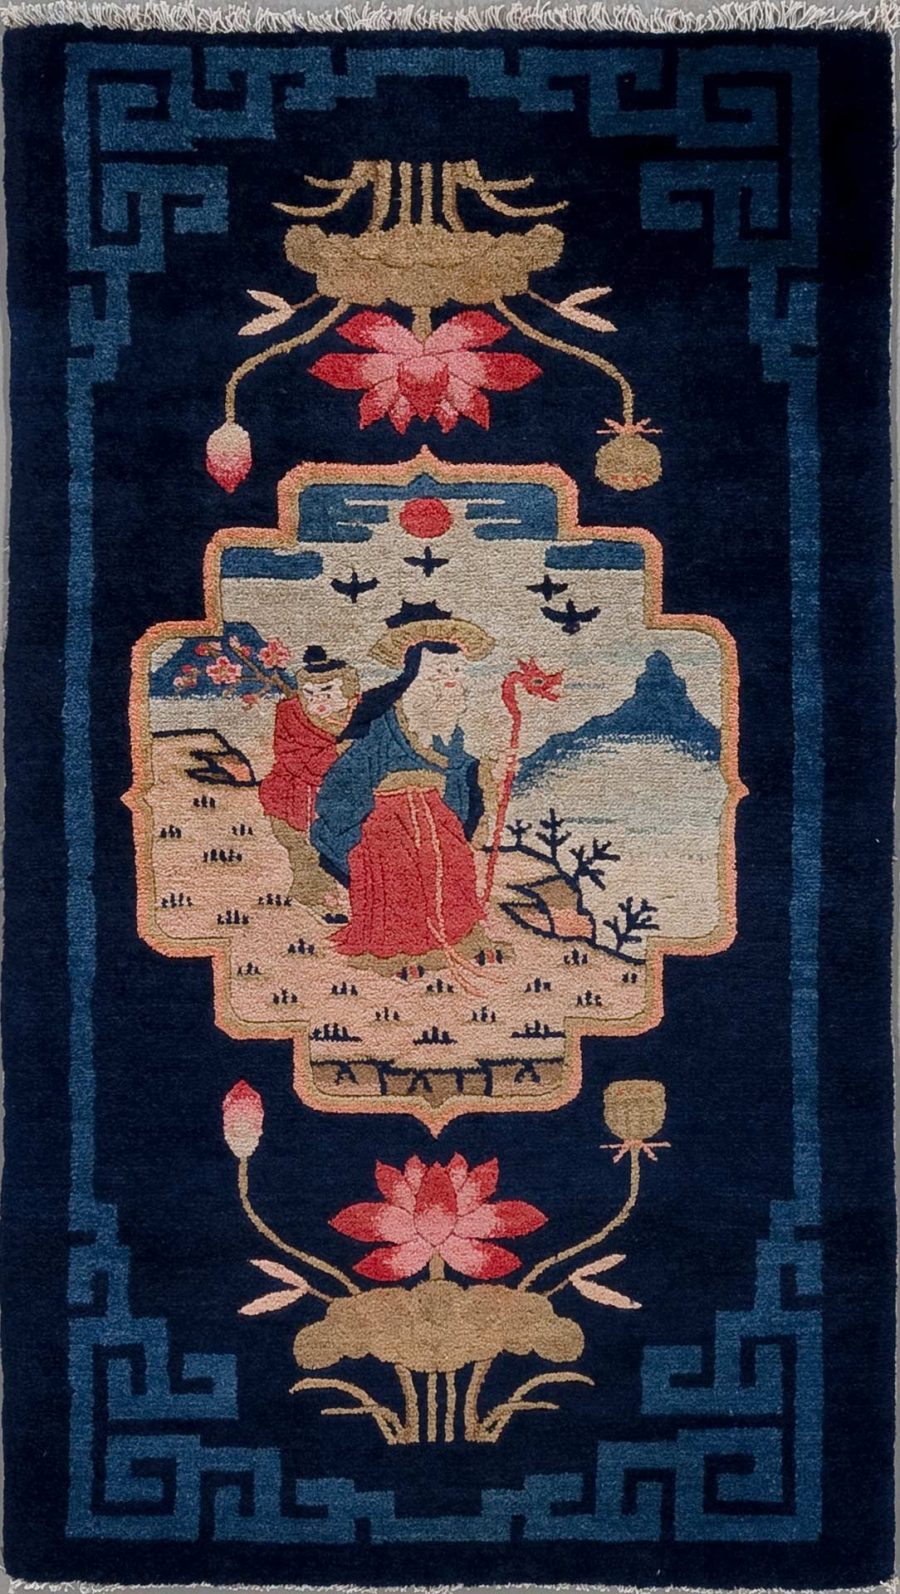 Traditioneller, vertikal orientierter, handgeknüpfter Teppich mit asiatisch anmutendem Design. Im Zentrum befindet sich eine Szene mit zwei stilisierten menschlichen Figuren, einer sitzend und einer stehend, umgeben von naturinspirierten Motiven wie Bäumen und Blumen. Oben und unten sind lotusähnliche Blumen abgebildet. Die Hauptfarben sind dunkelblau, beige, rot und Akzente in gedeckten Farbtönen, umrandet von einer Bordüre mit geometrischem Muster.